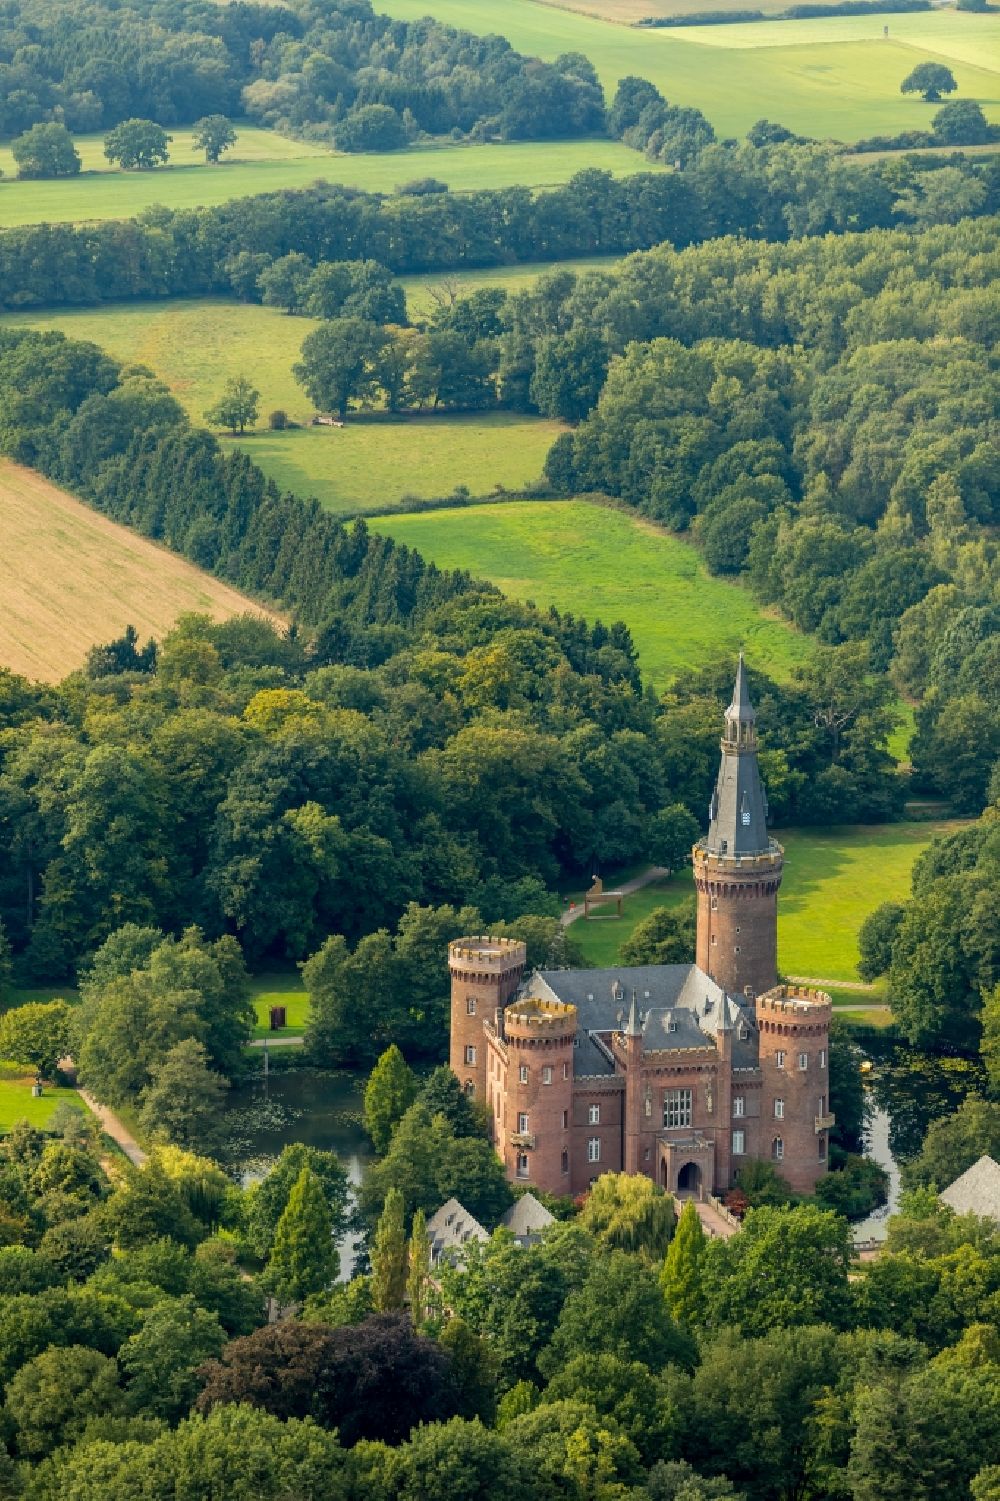 Luftaufnahme Bedburg-Hau - Museum Schloss Moyland in Bedburg-Hau im Bundesland Nordrhein-Westfalen, Deutschland